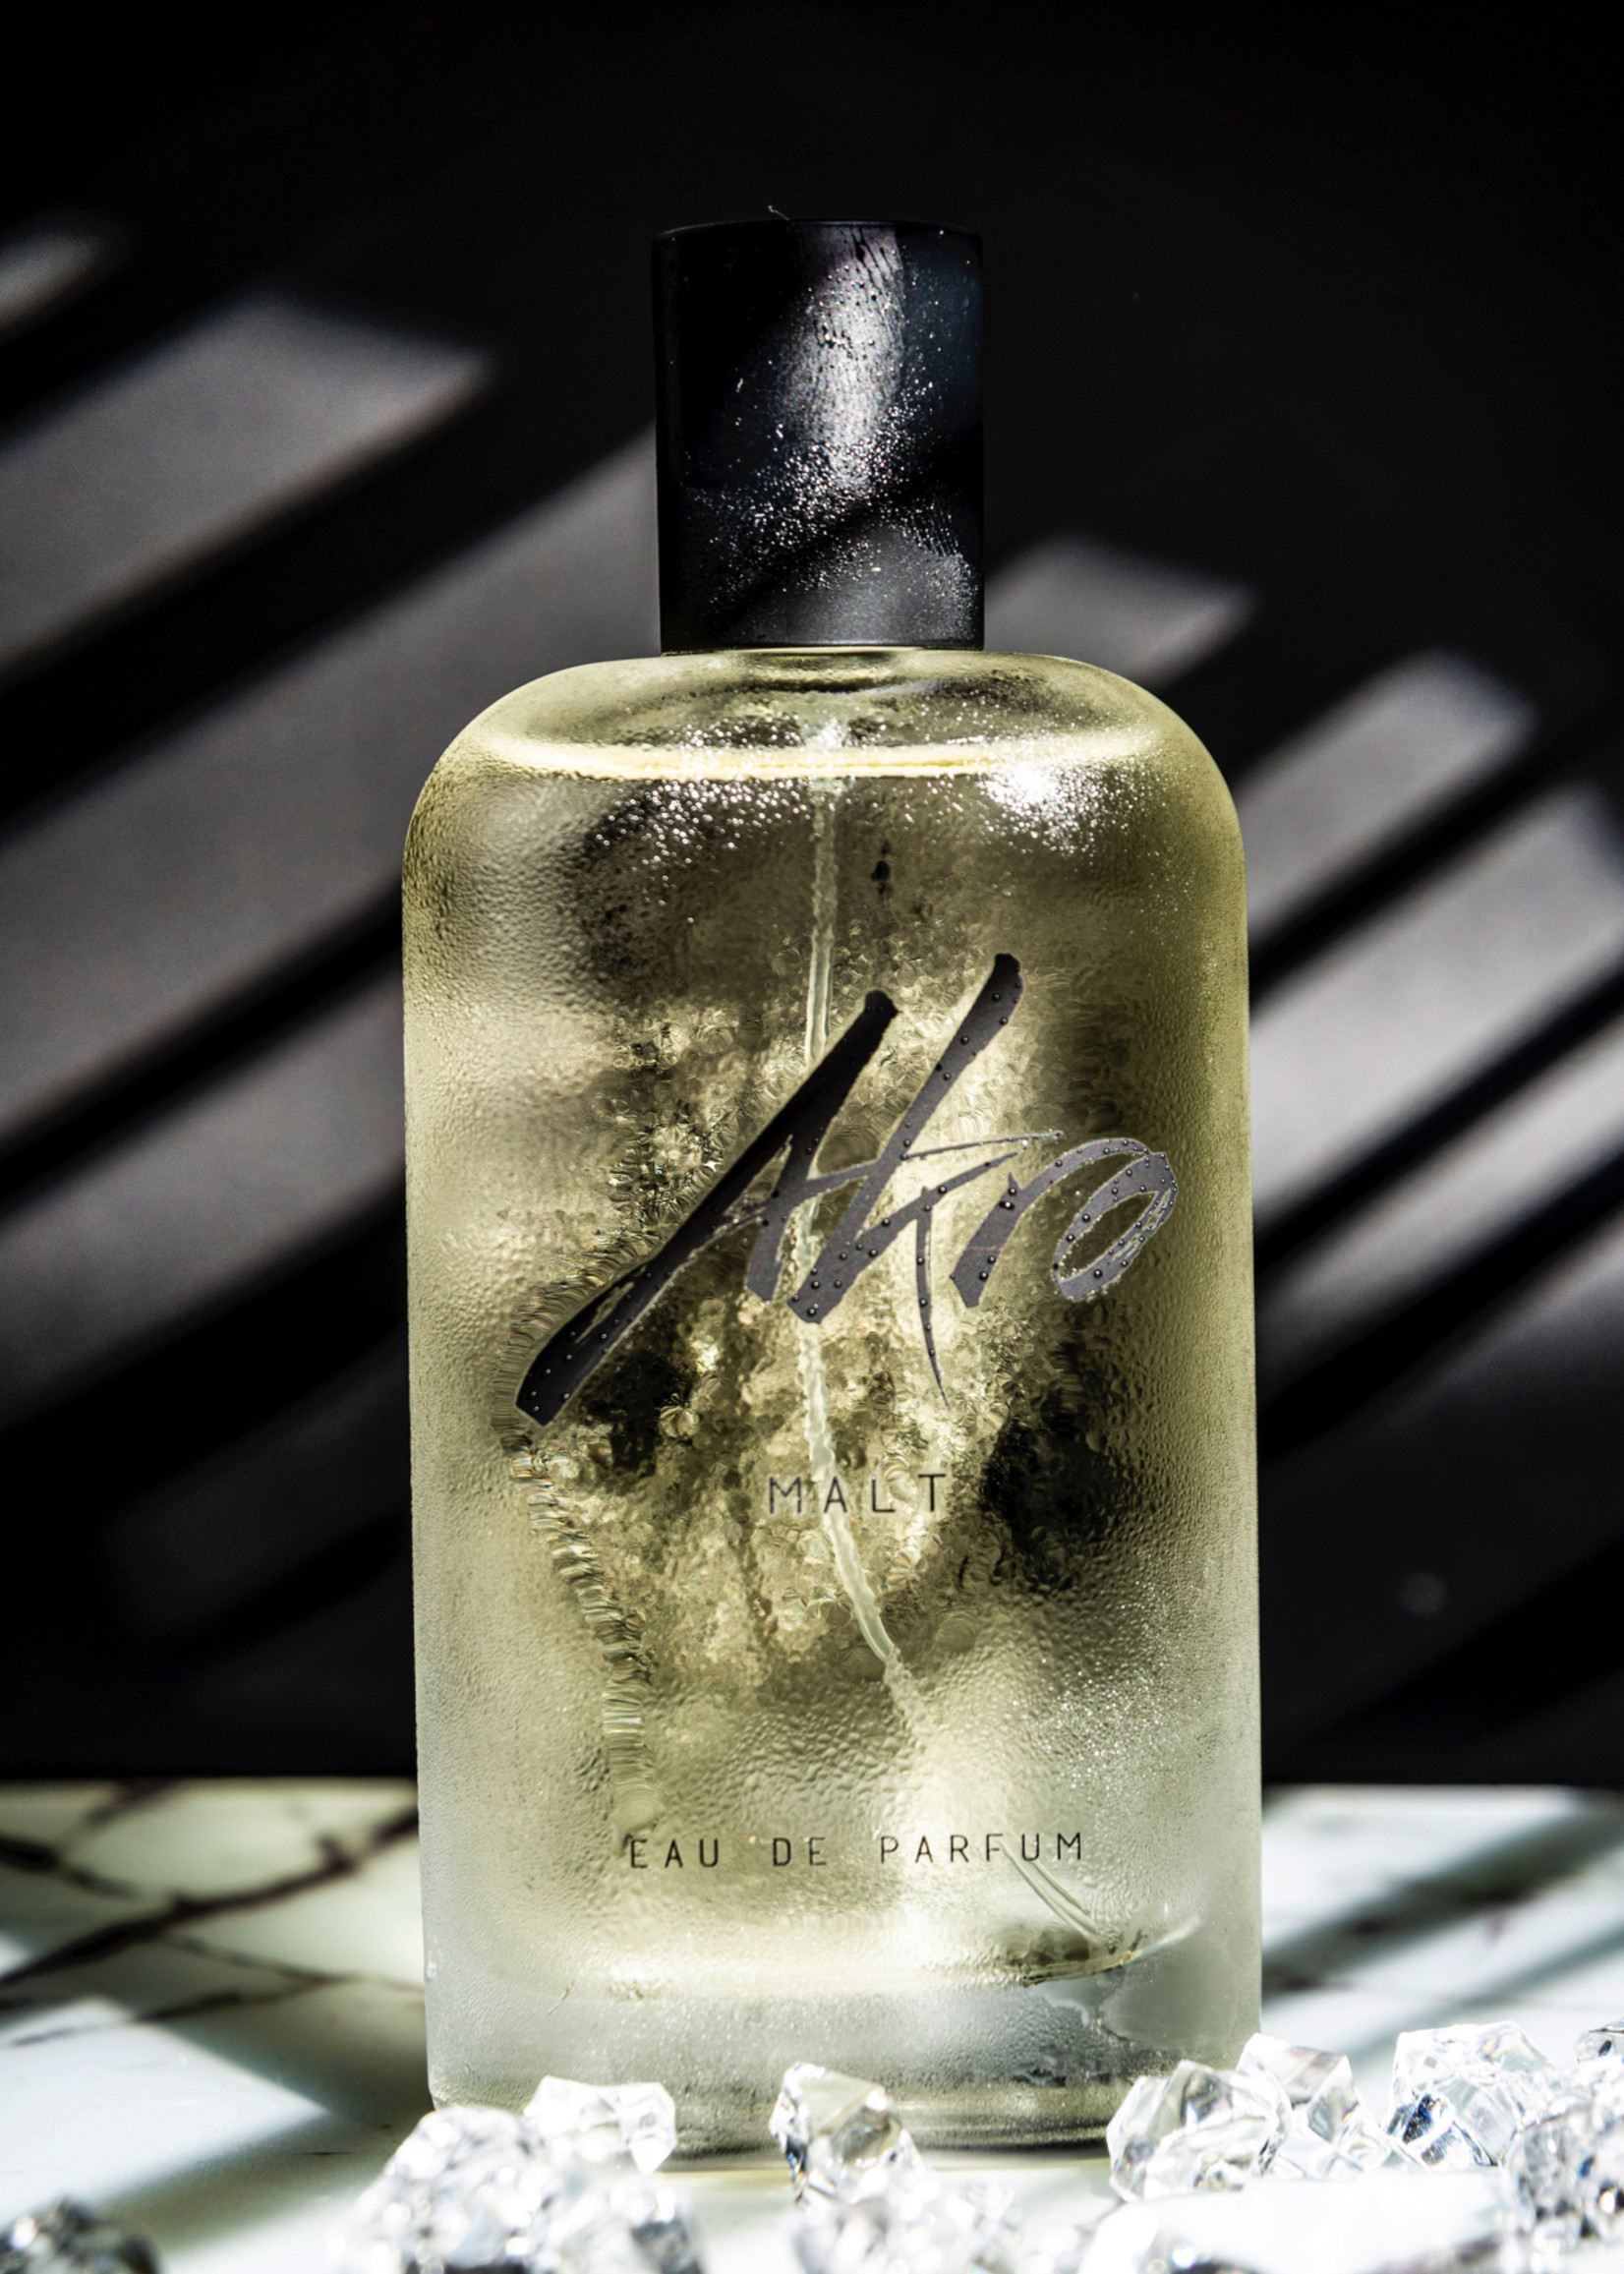 Akro MALT - Eau de Parfum